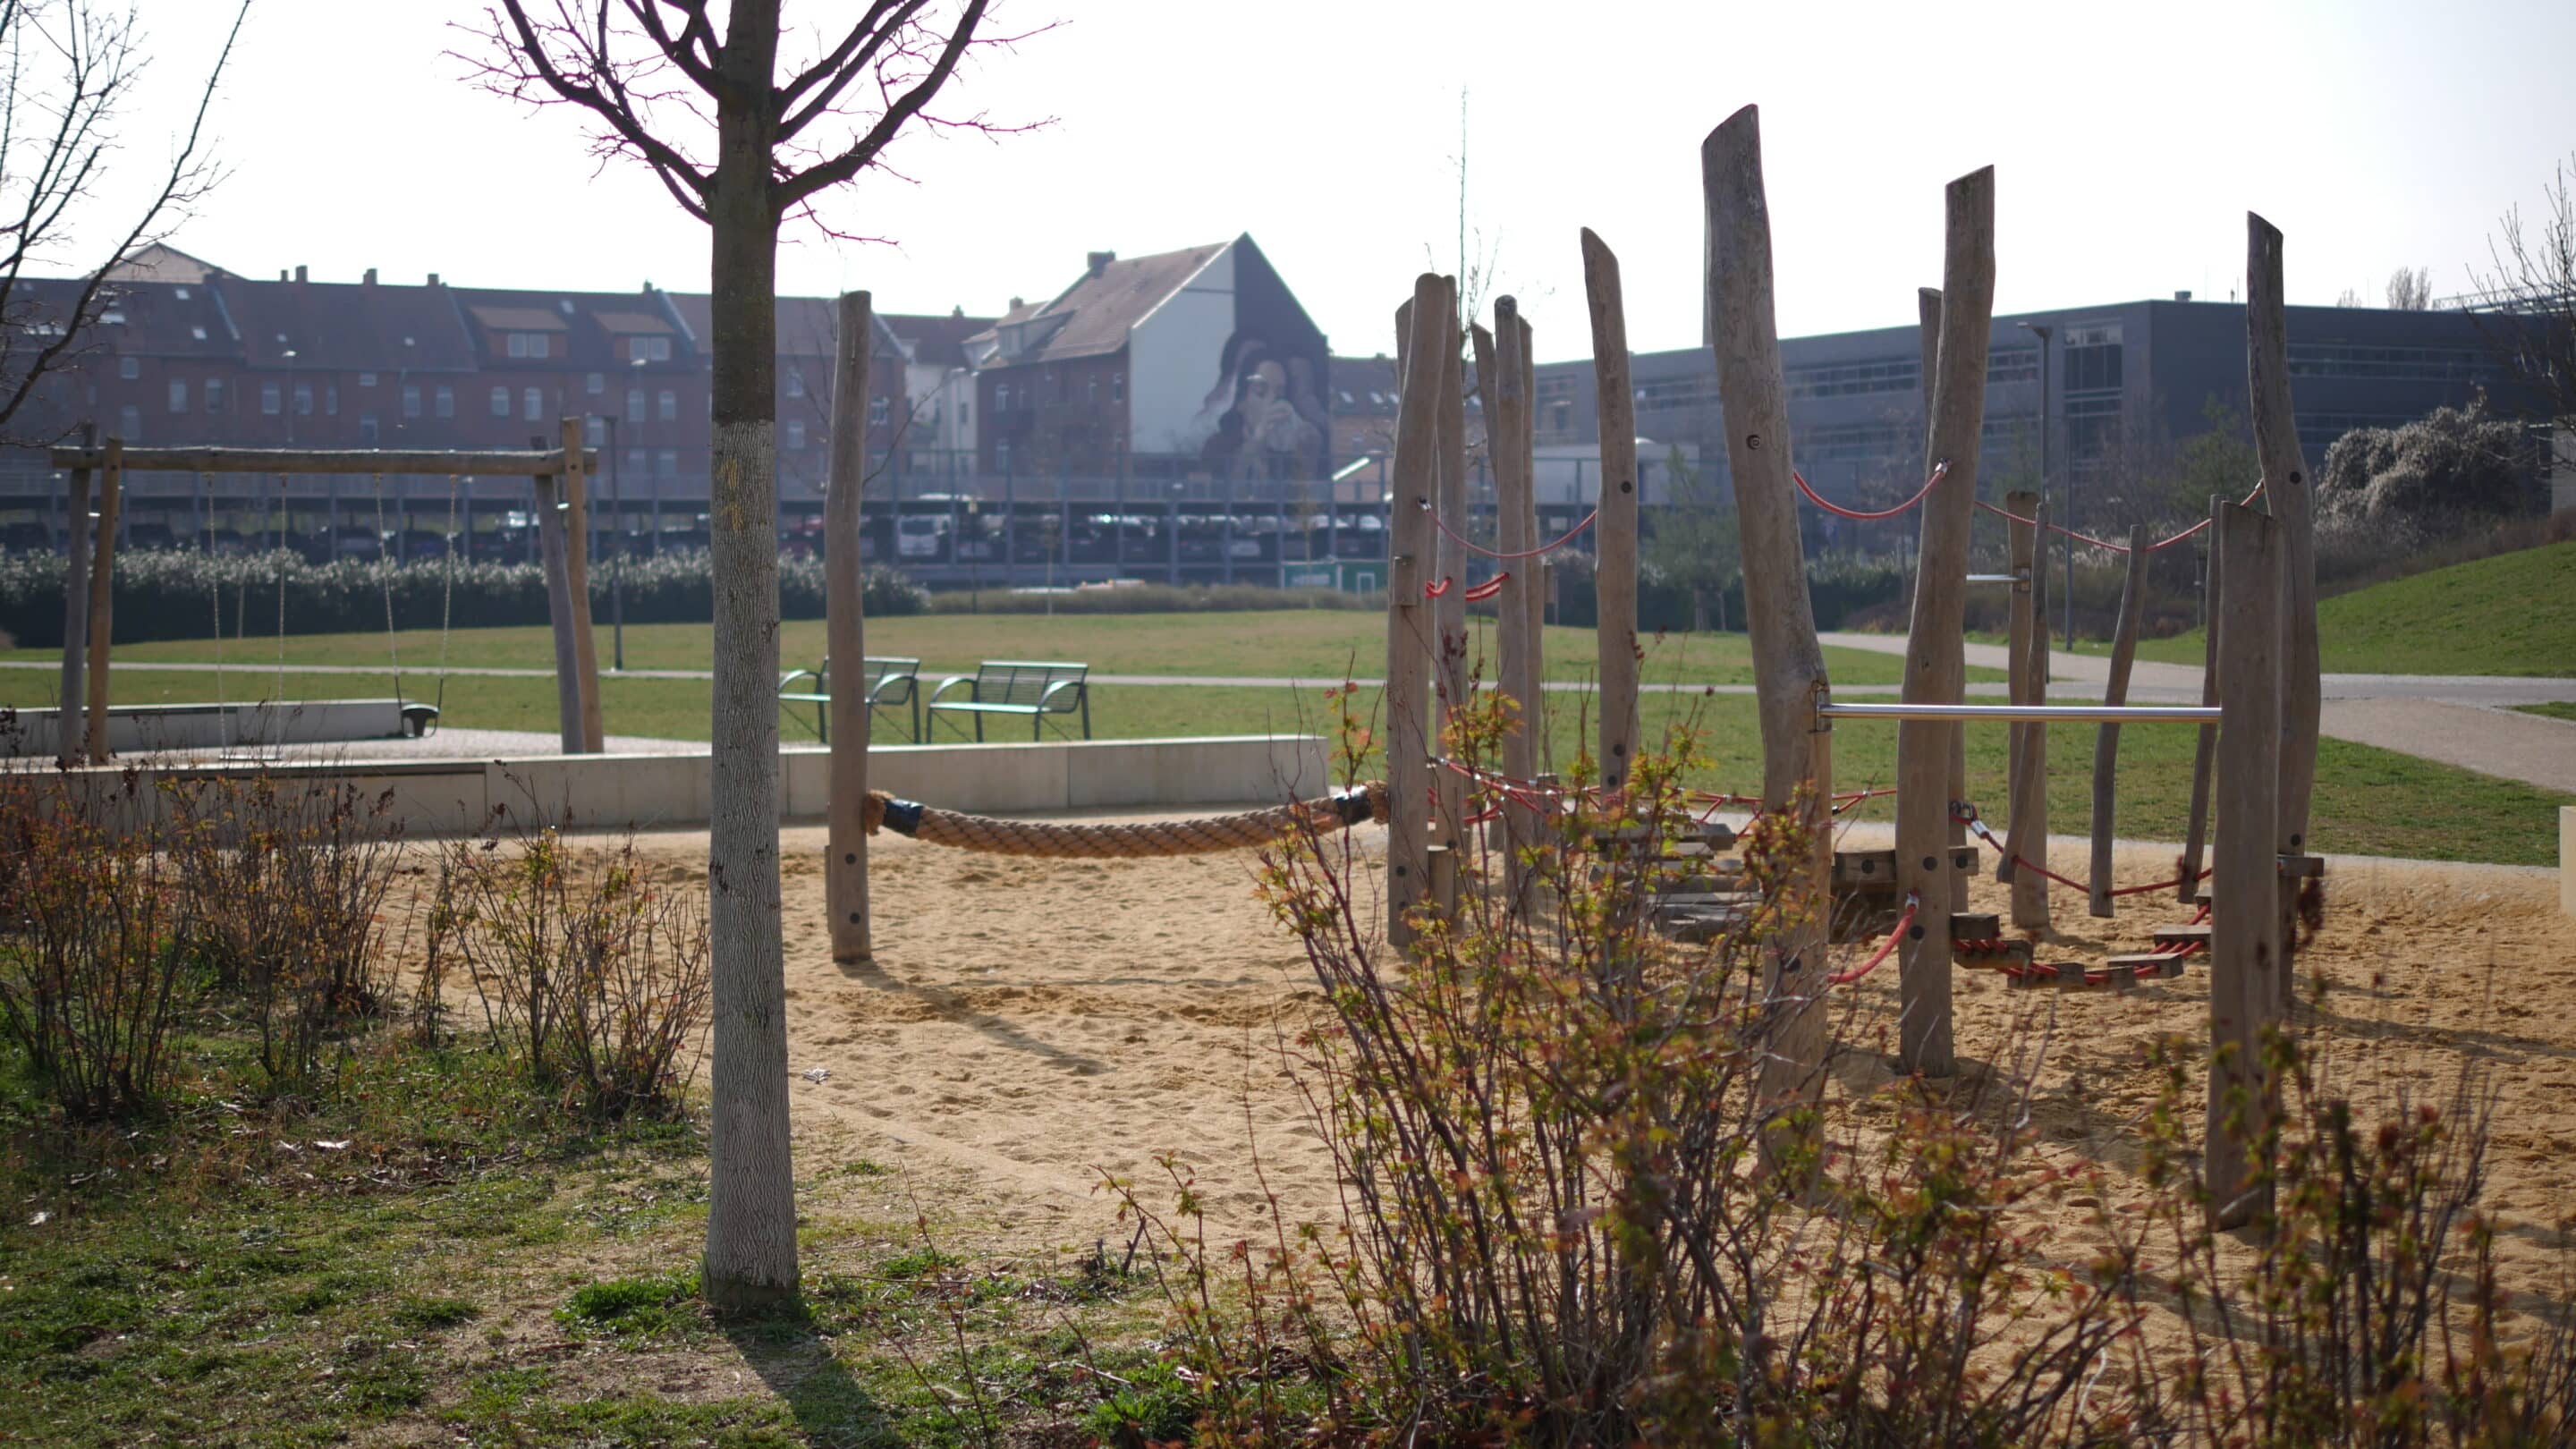 Spielplatz im Stadtteilpark Johannesfeld Erfurt mit Klettergerüst und Schaukel.